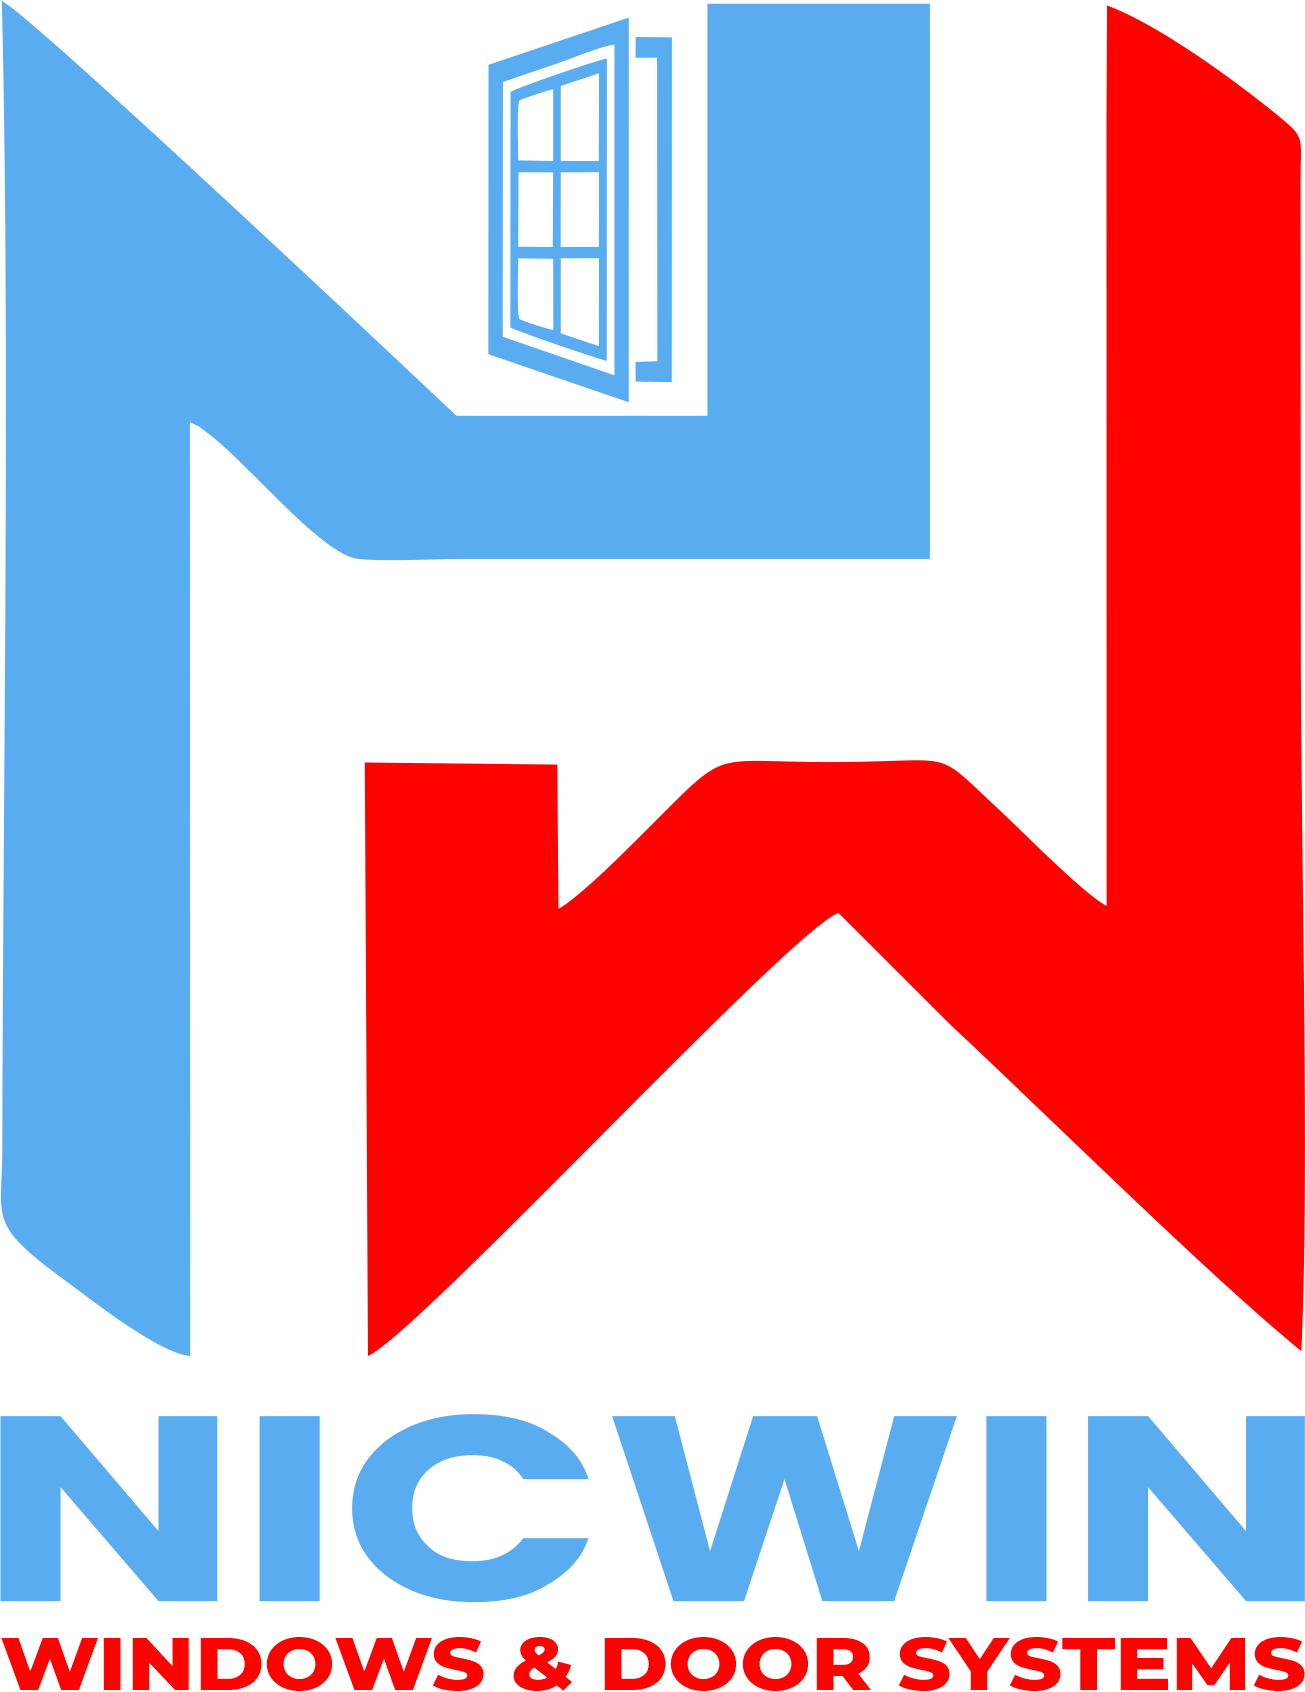 Nicwin